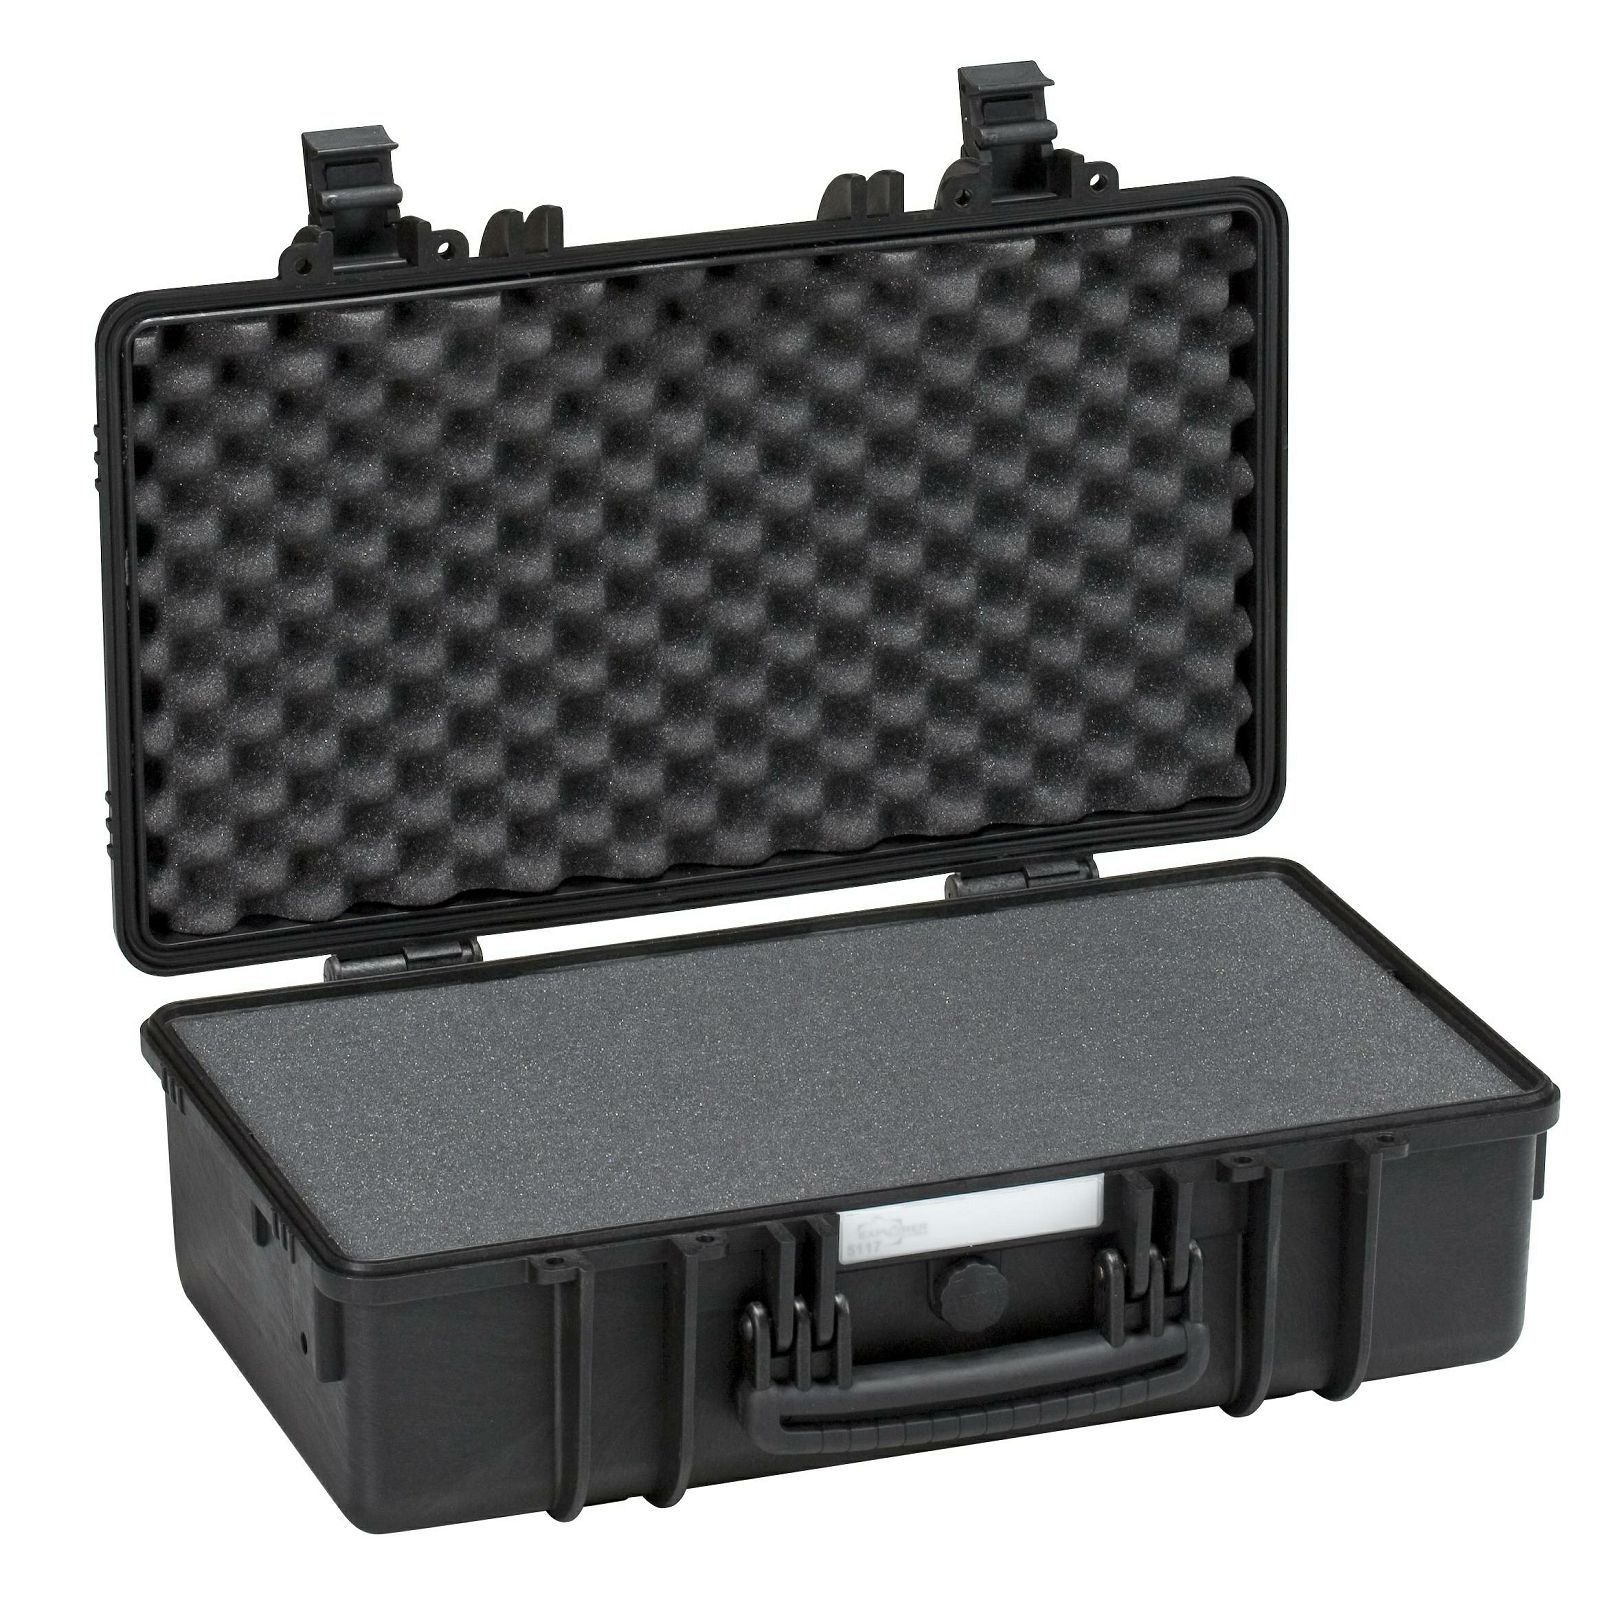 Explorer Cases 5117 Black Foam 546x347x197mm kufer za foto opremu kofer Camera Case